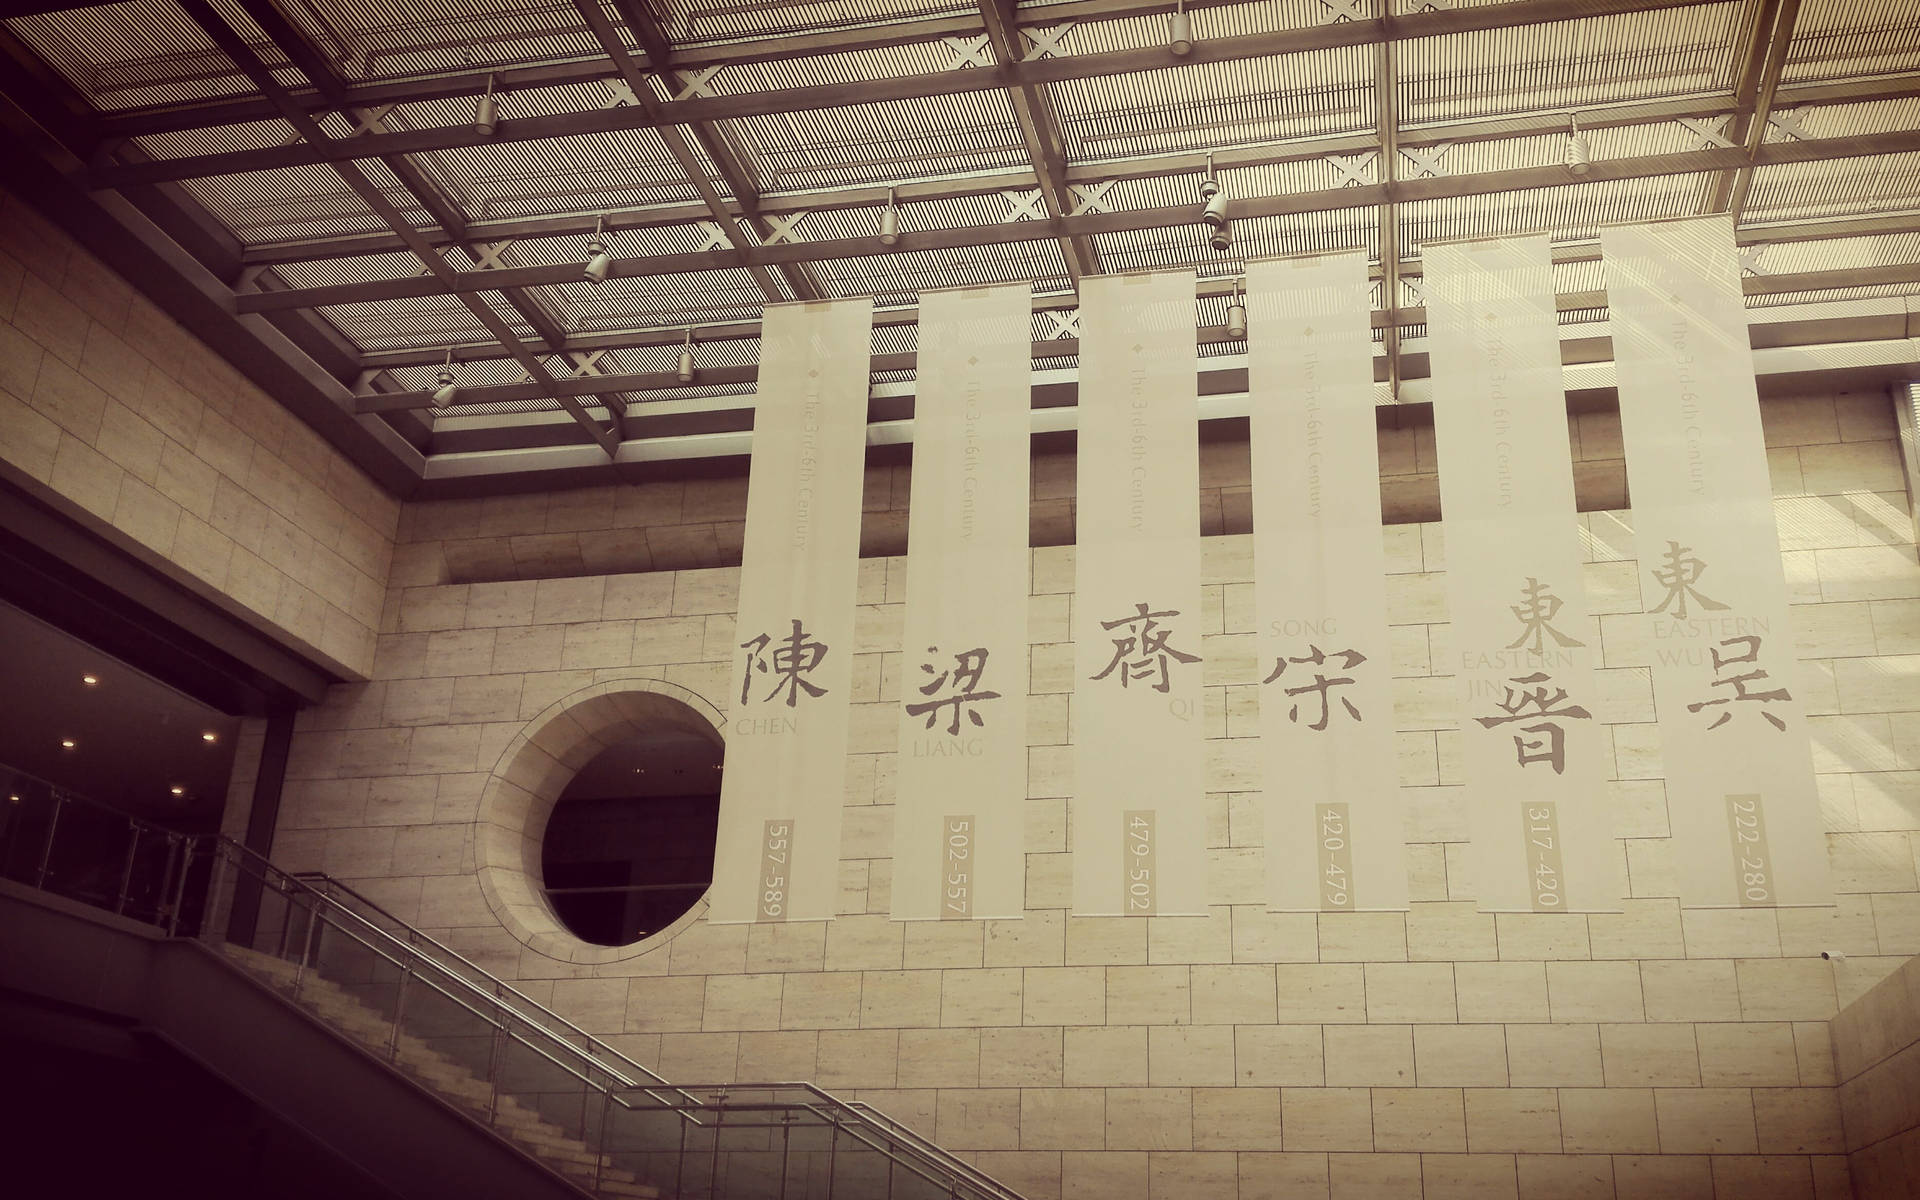 Nanjing Si Dynastier Museum sprøjter ud på skærmen. Wallpaper